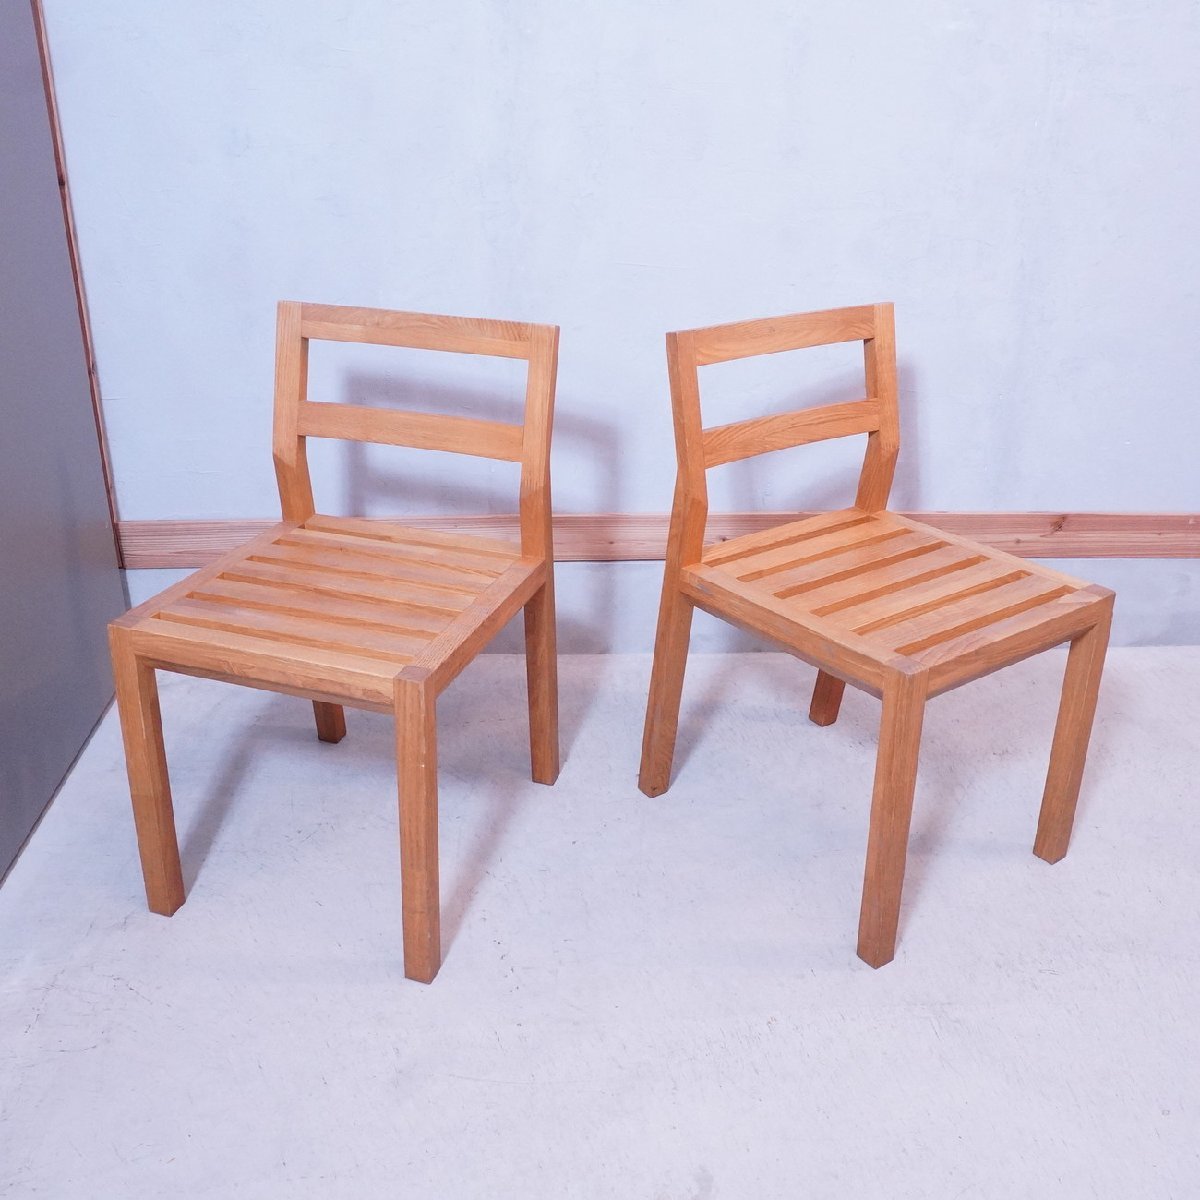 WISEWISE ワイスワイス SATOYAMA サトヤマ ダイニングチェア2脚セット クリ材 無垢集成材 椅子 ナチュラル シンプル サイドチェア EA412_画像2